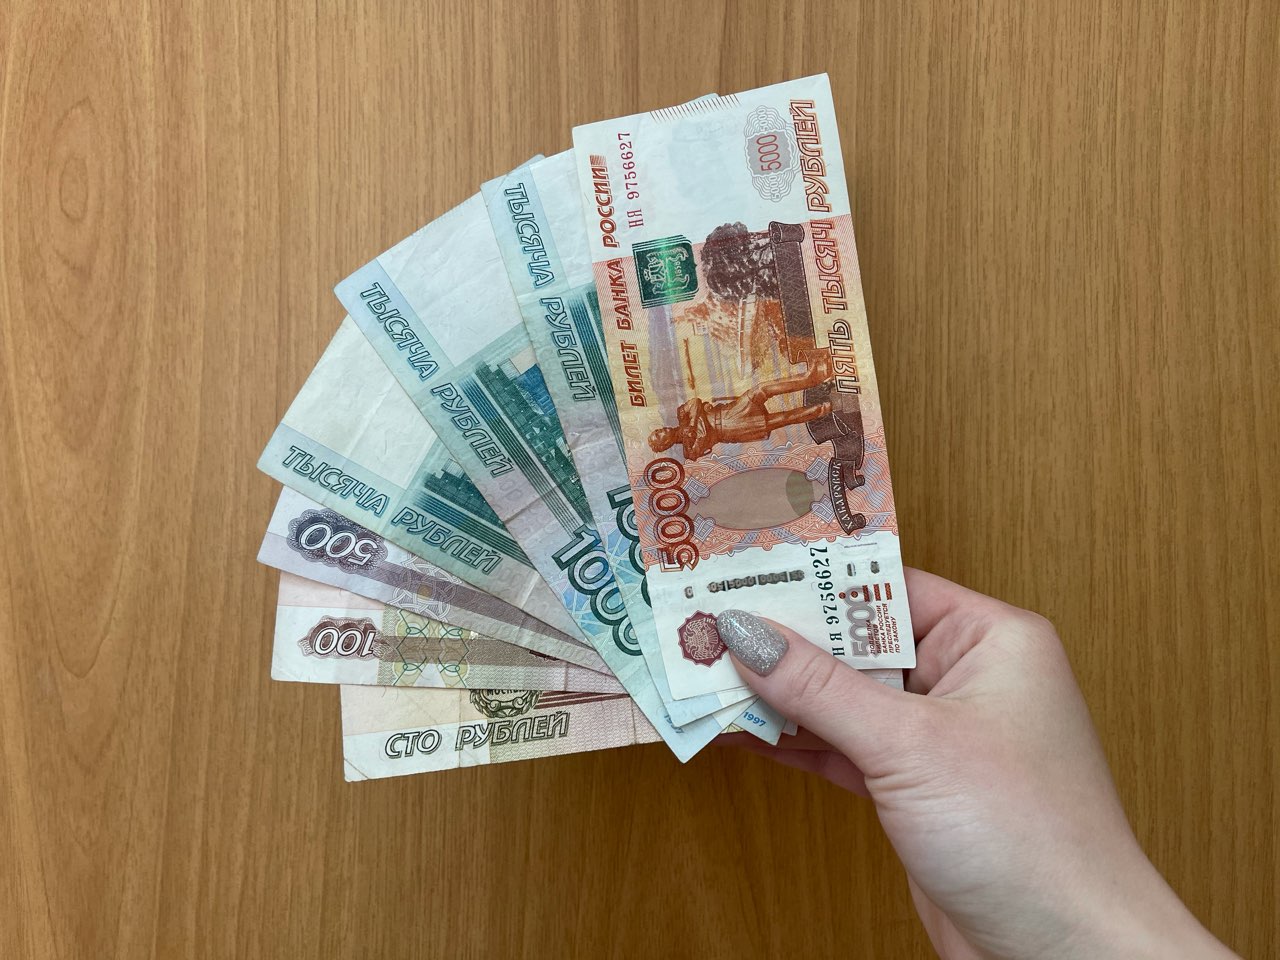 Айтишникам России выдали льготных ипотечных кредитов на 26 млрд рублей - фото 1